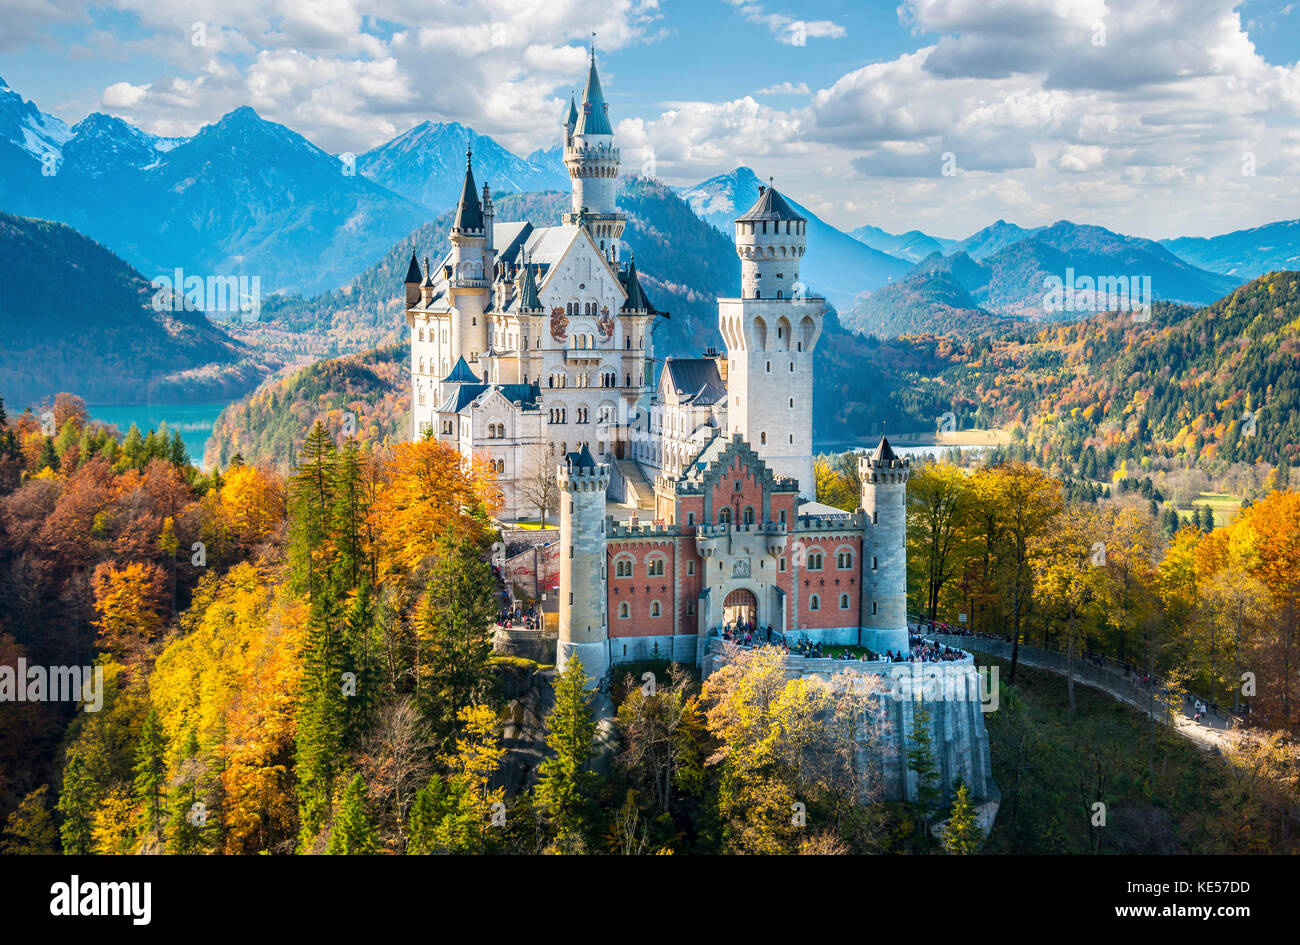 Le château de Neuschwanstein en automne, alpsee derrière, schwangau, ostallgäu, Allgäu, souabe, Bavière, Allemagne Banque D'Images